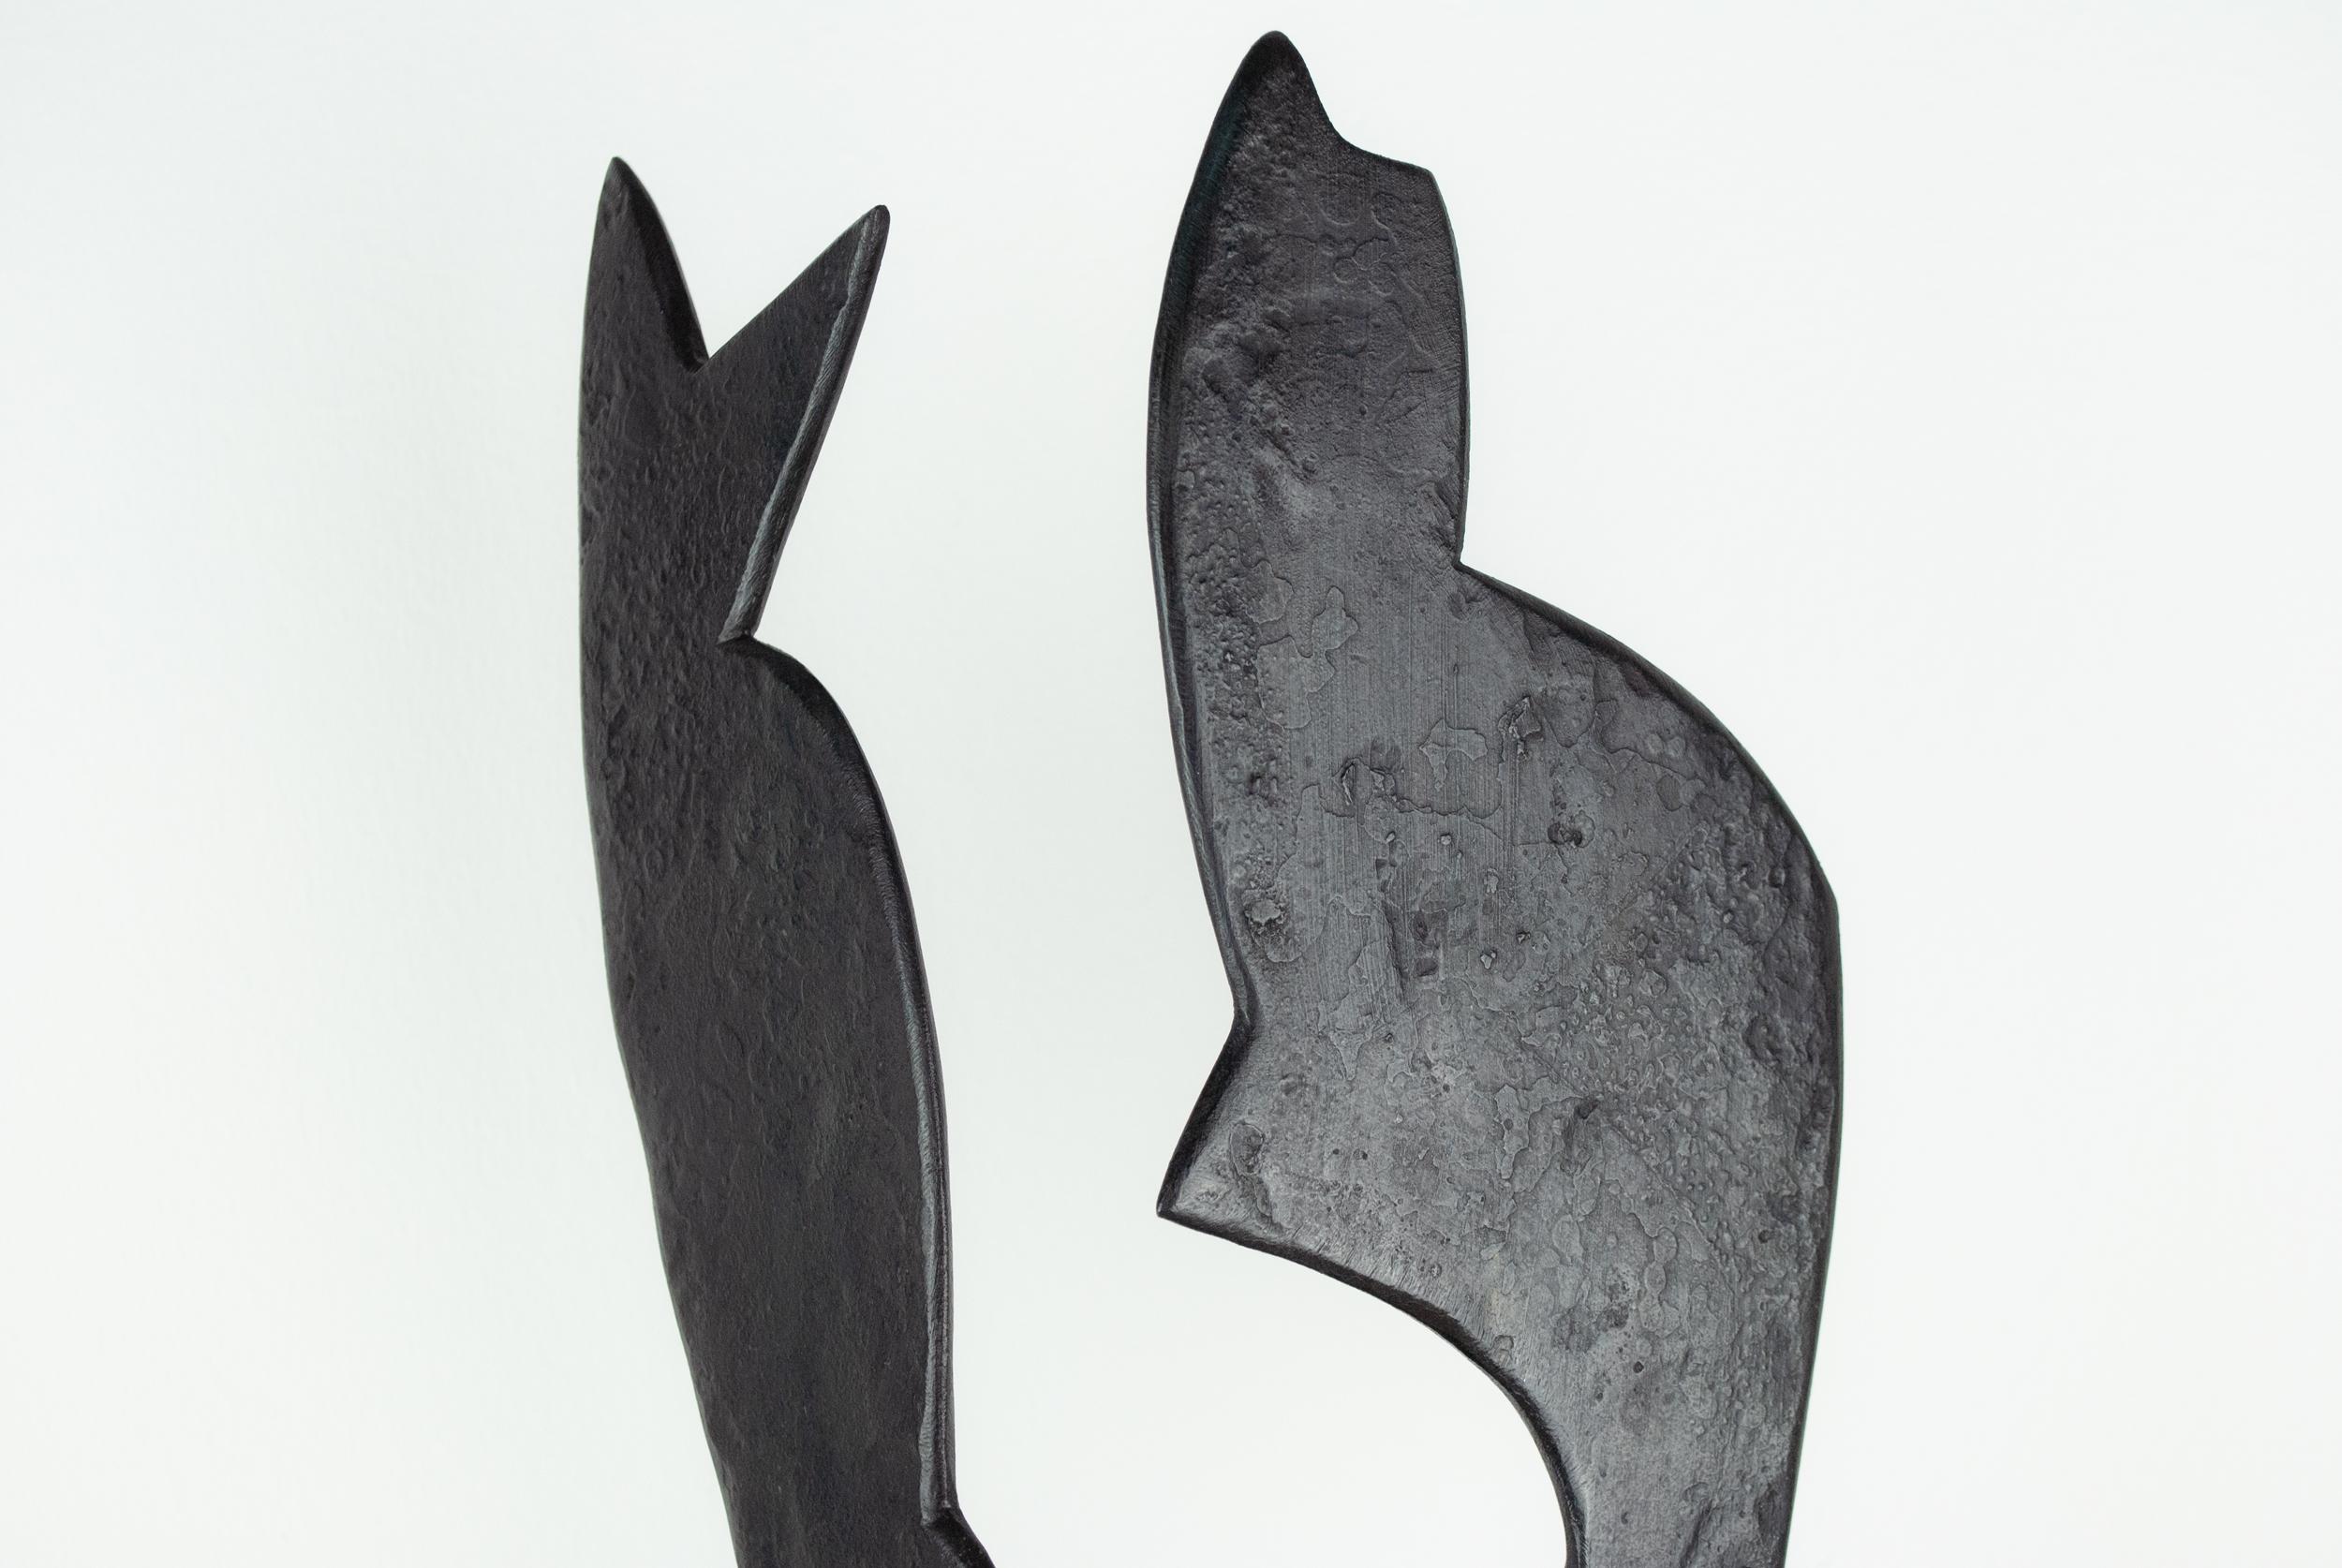 Schwarzer geschmiedeter Stahl, abstrakte Skulptur. Die Komposition aus zwei abstrakten Formen steht auf einem rautenförmigen Sockel. Die Formen sind im Winkel zueinander angeordnet, um eine dreidimensionale Beziehung auszudrücken. Die beiden Formen